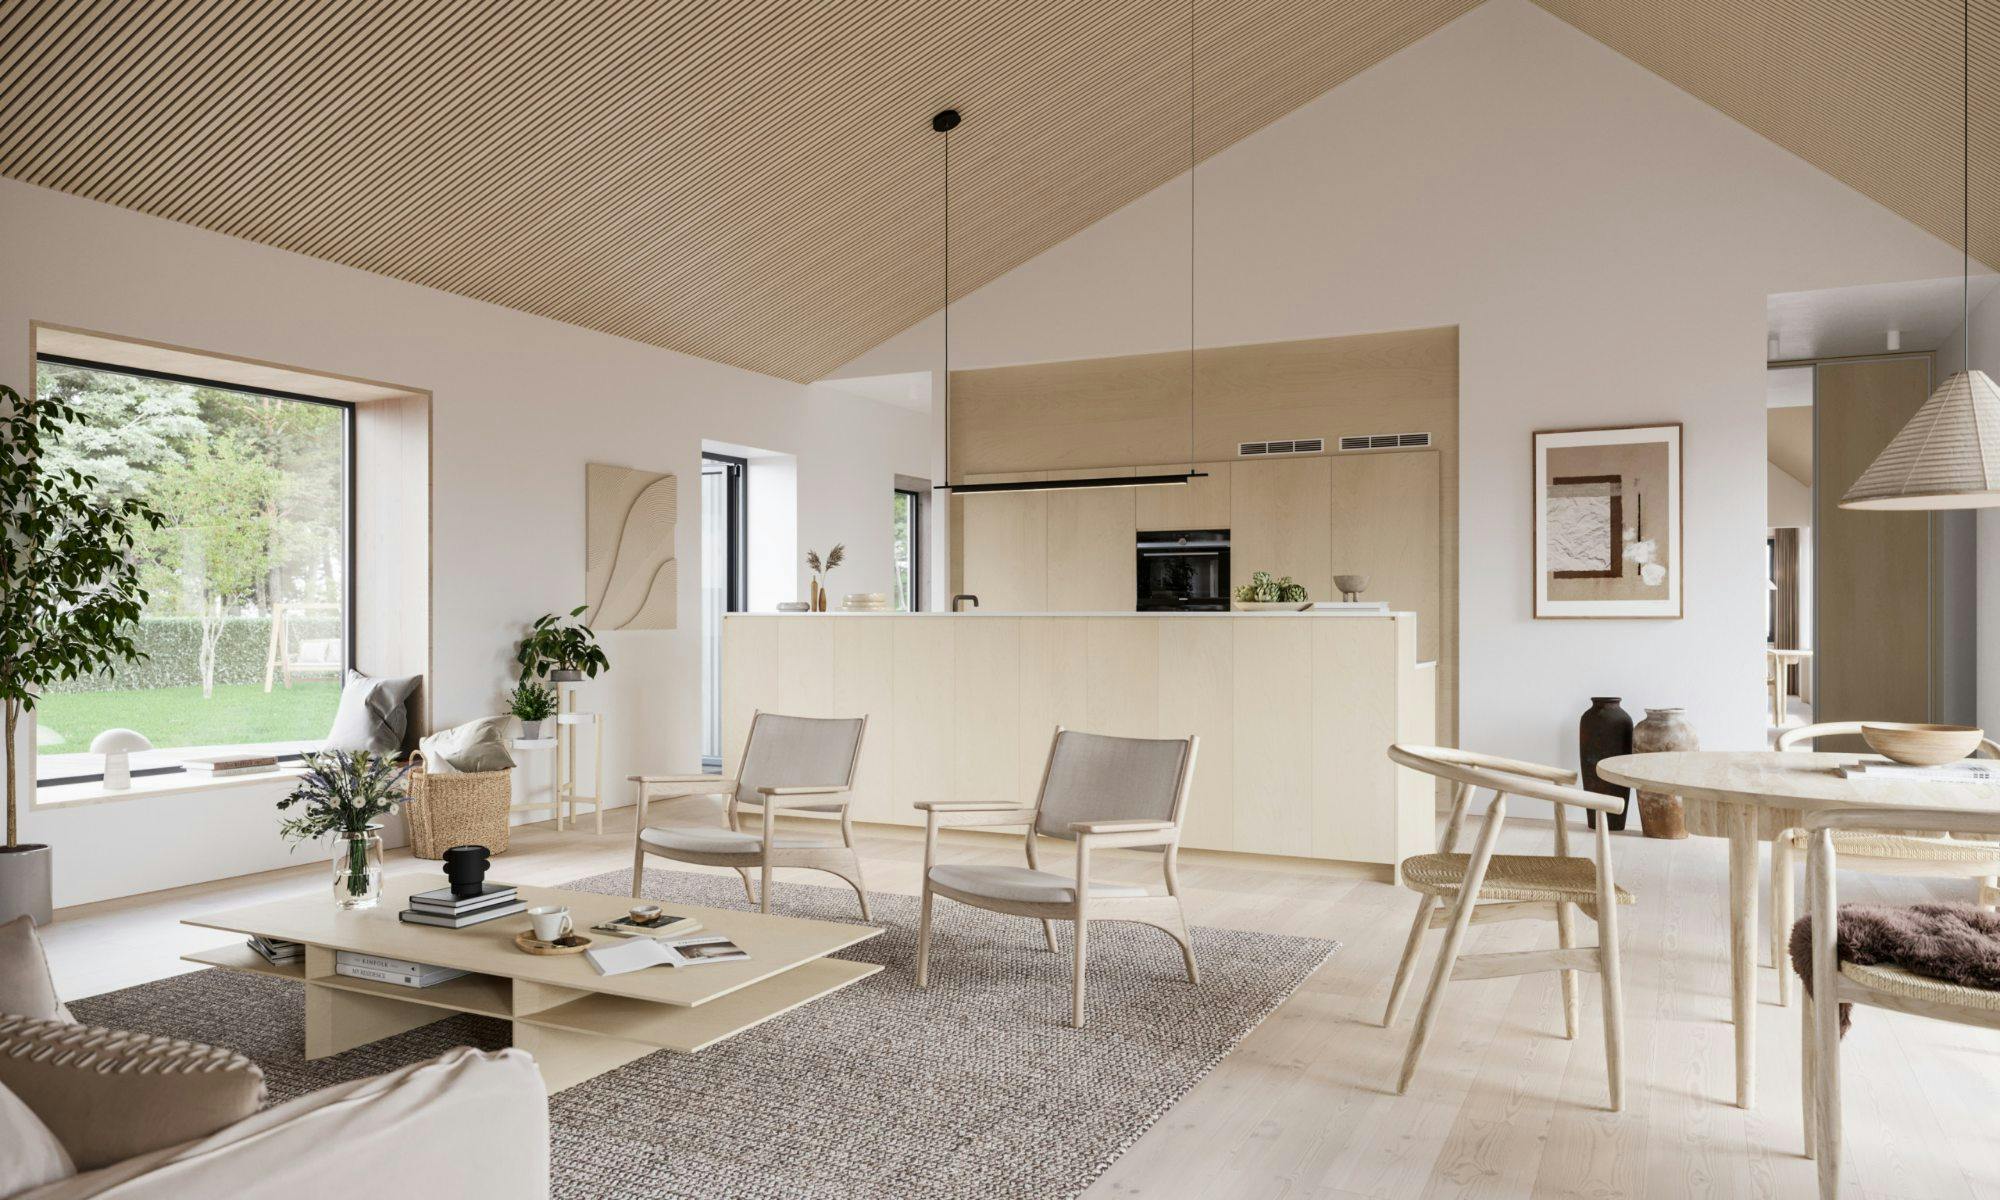 Numero immagine 40 della sezione corrente di Dekton Bergen engages in dialogue with wood in this minimalist and timeless kitchen di Cosentino Italia